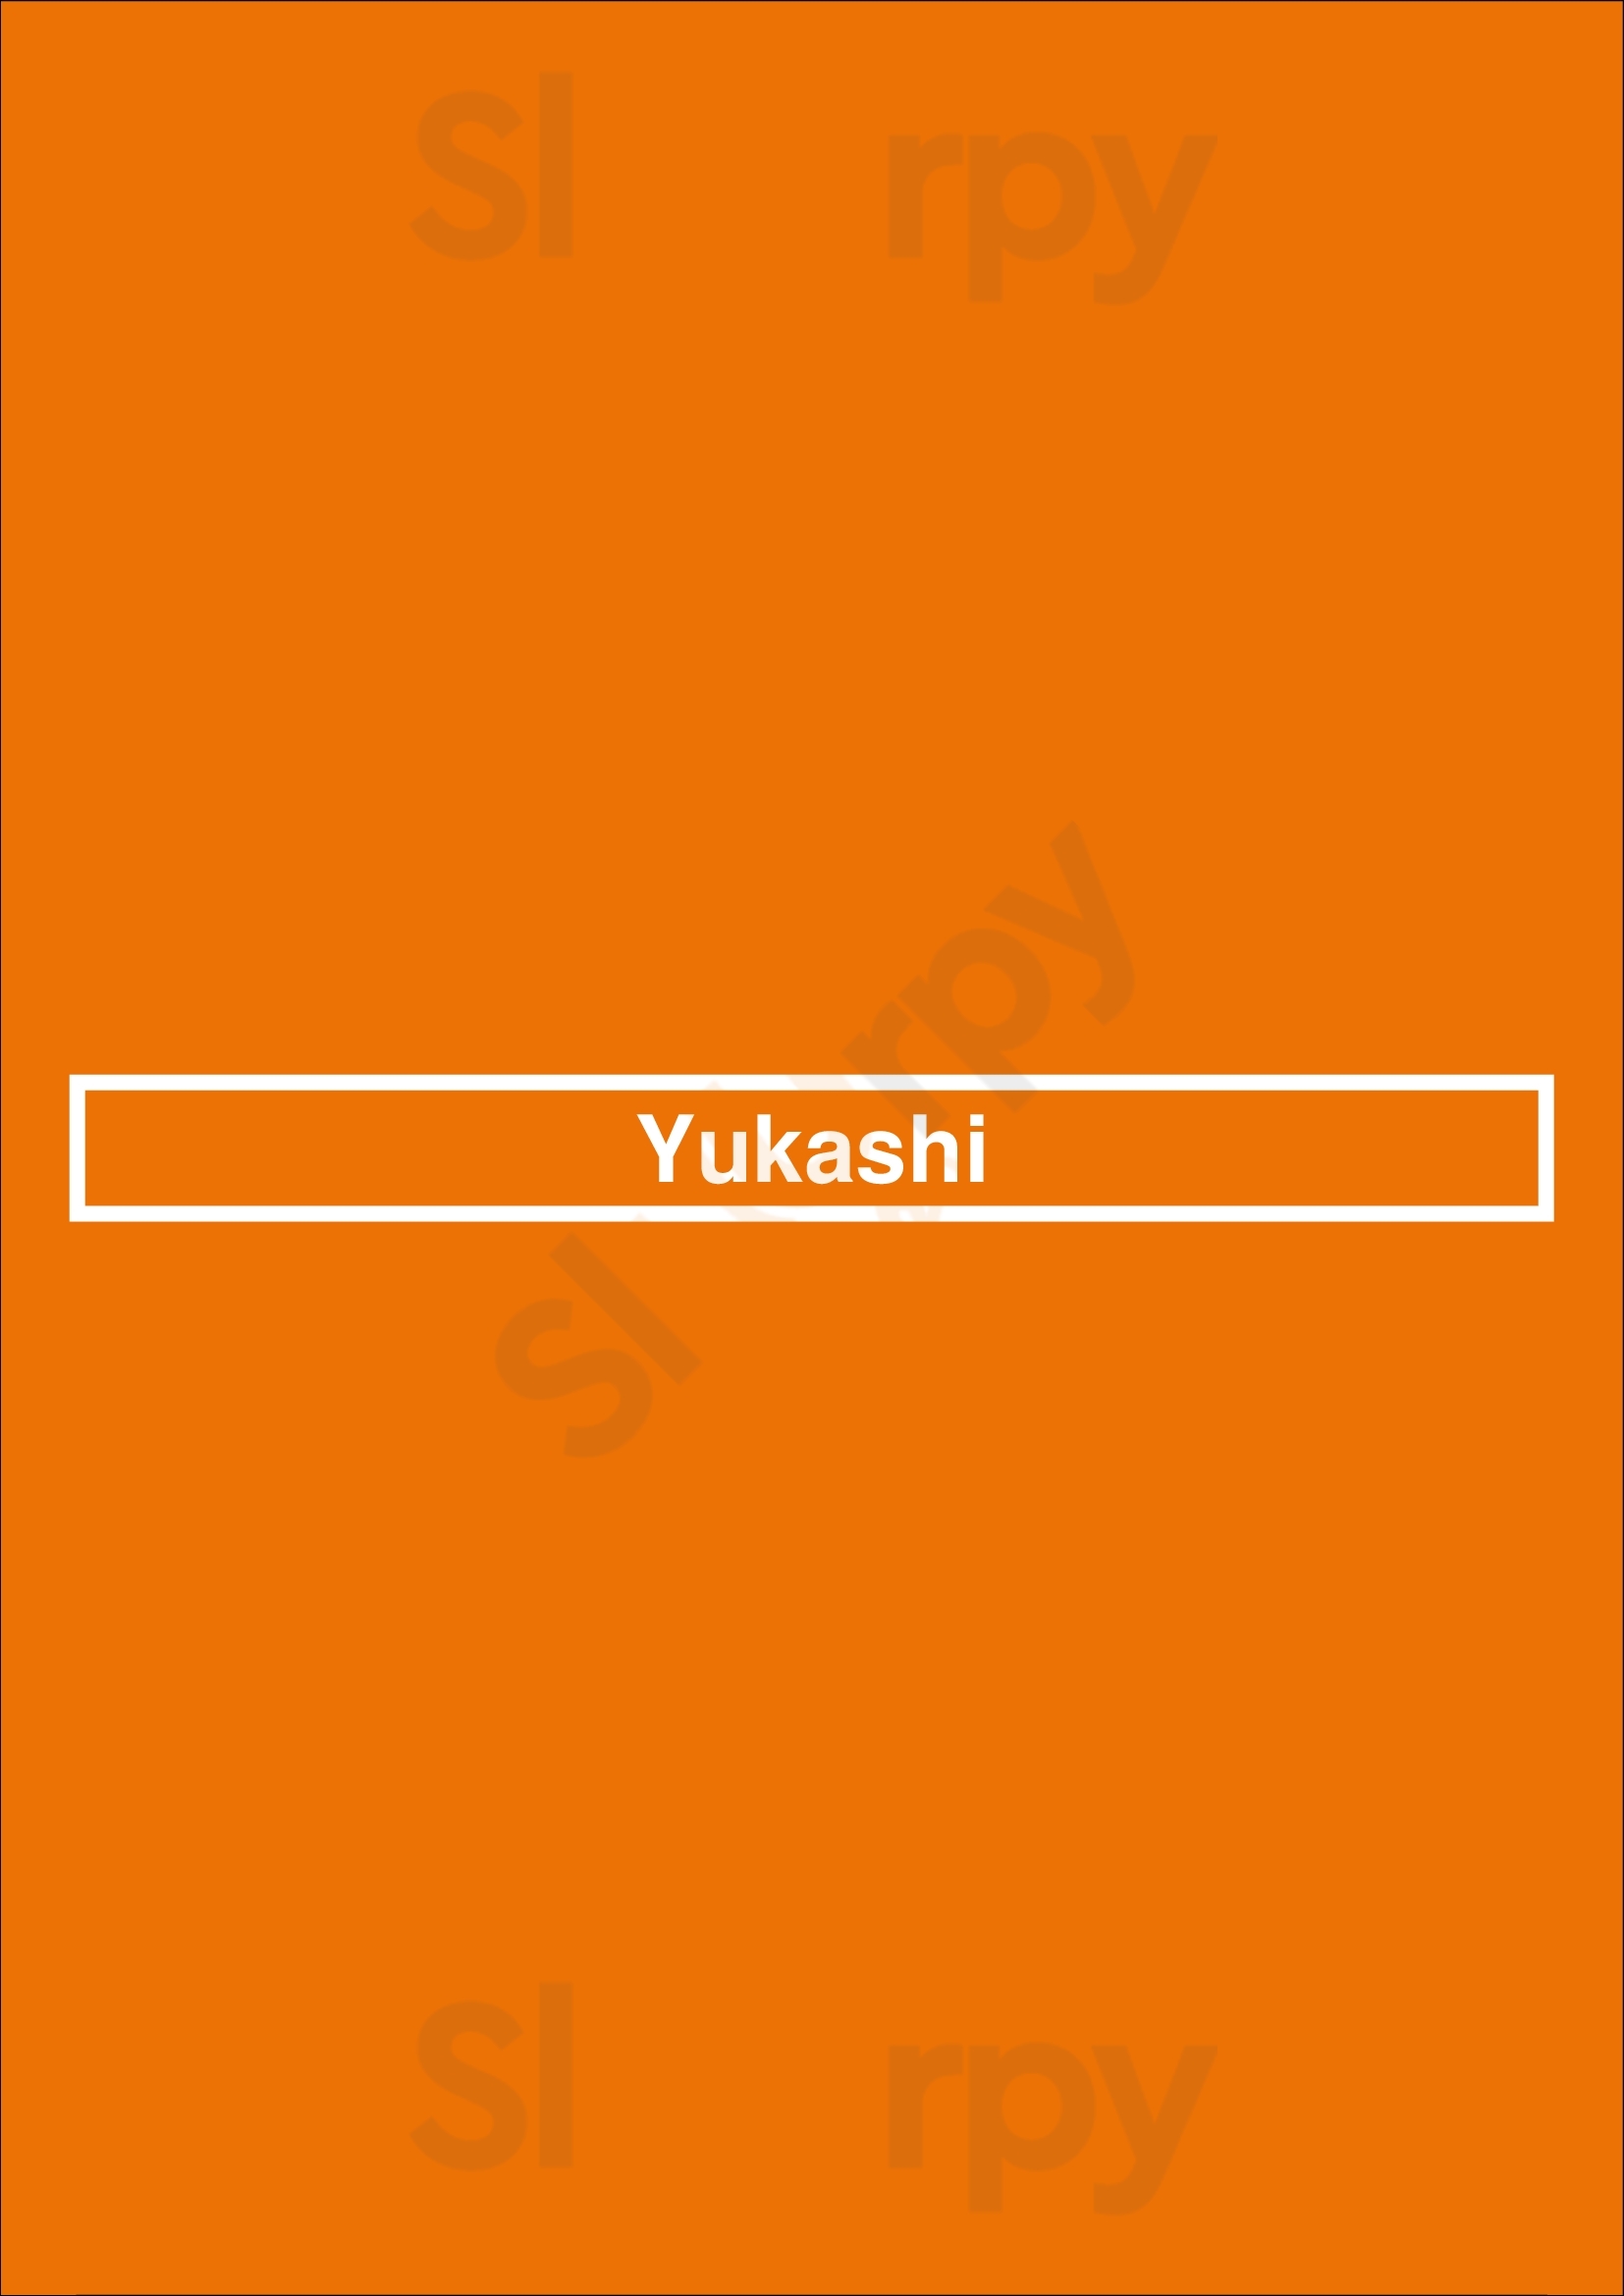 Yukashi Toronto Menu - 1